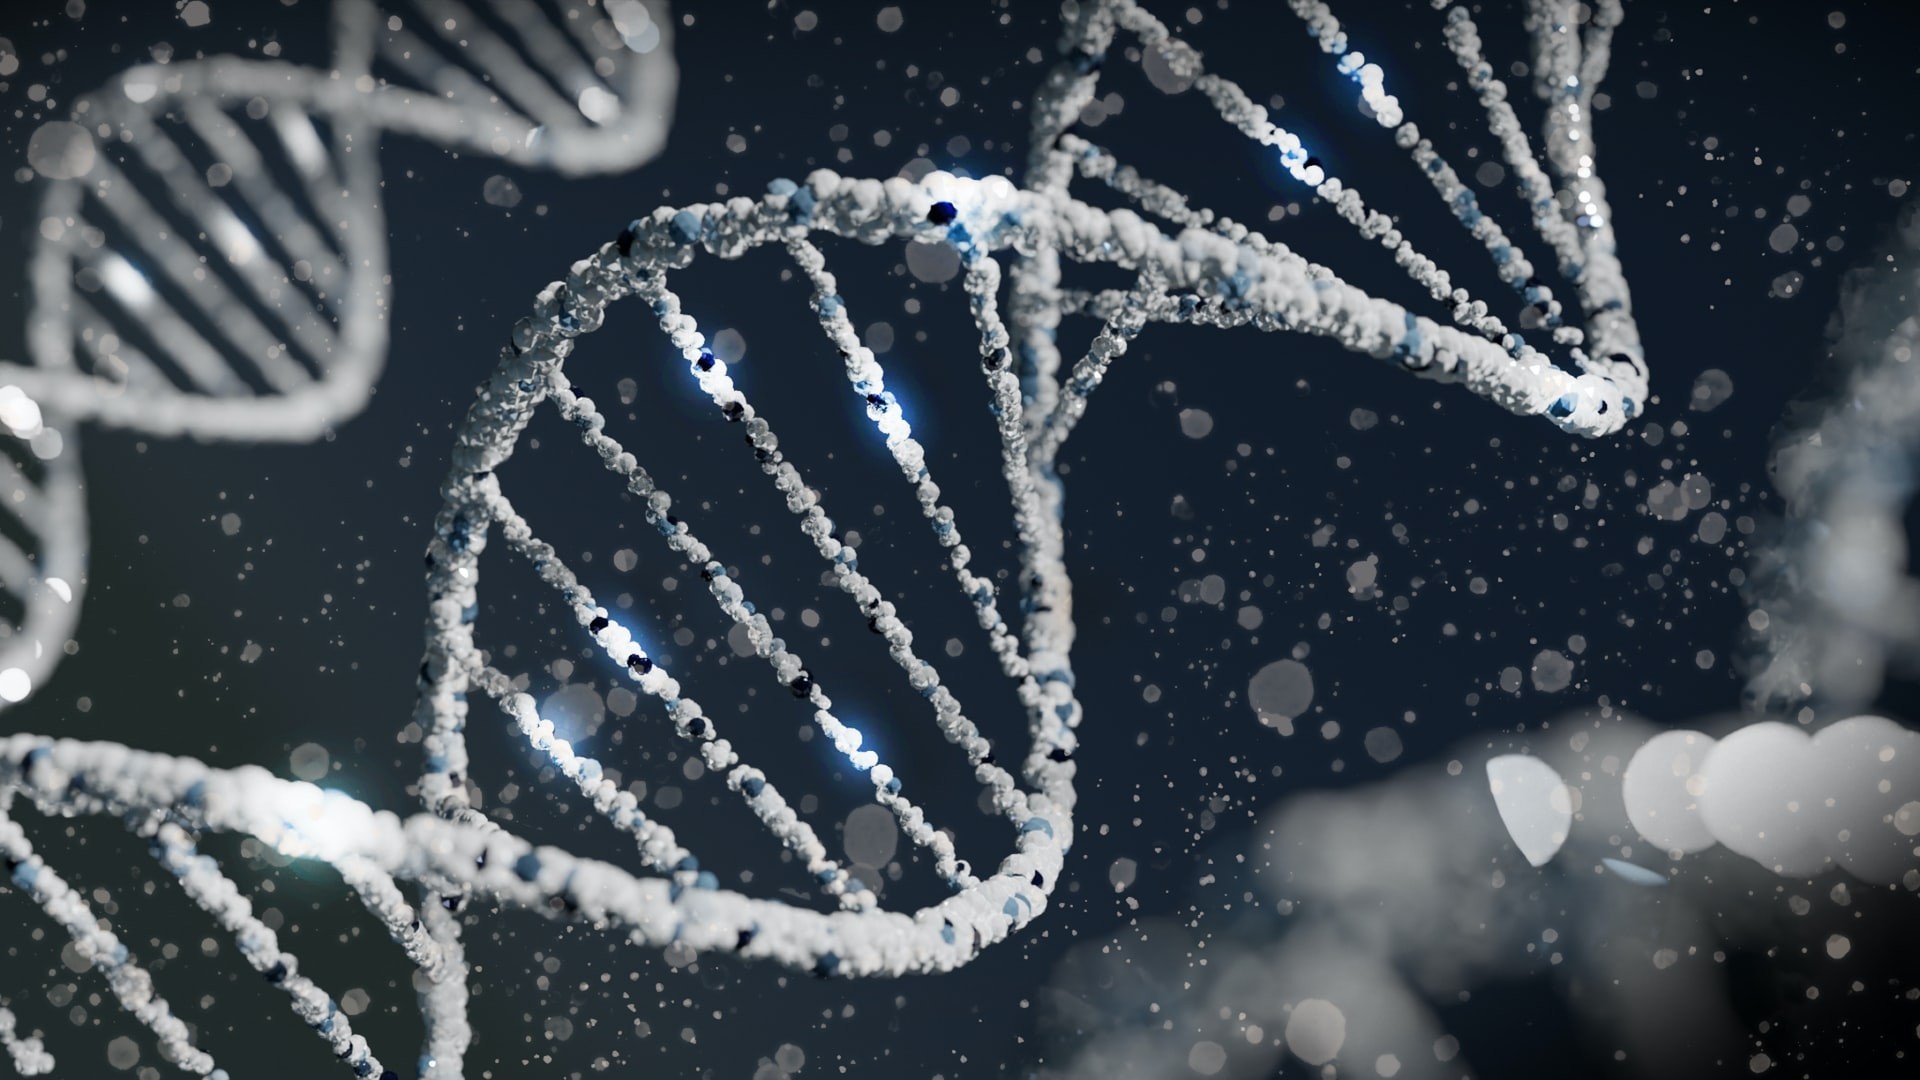 Uma pequena mudança em nosso DNA nos deixou mais propensos ao câncer, segundo estudo (Foto: Sangharsh Lohakare/Unsplash )